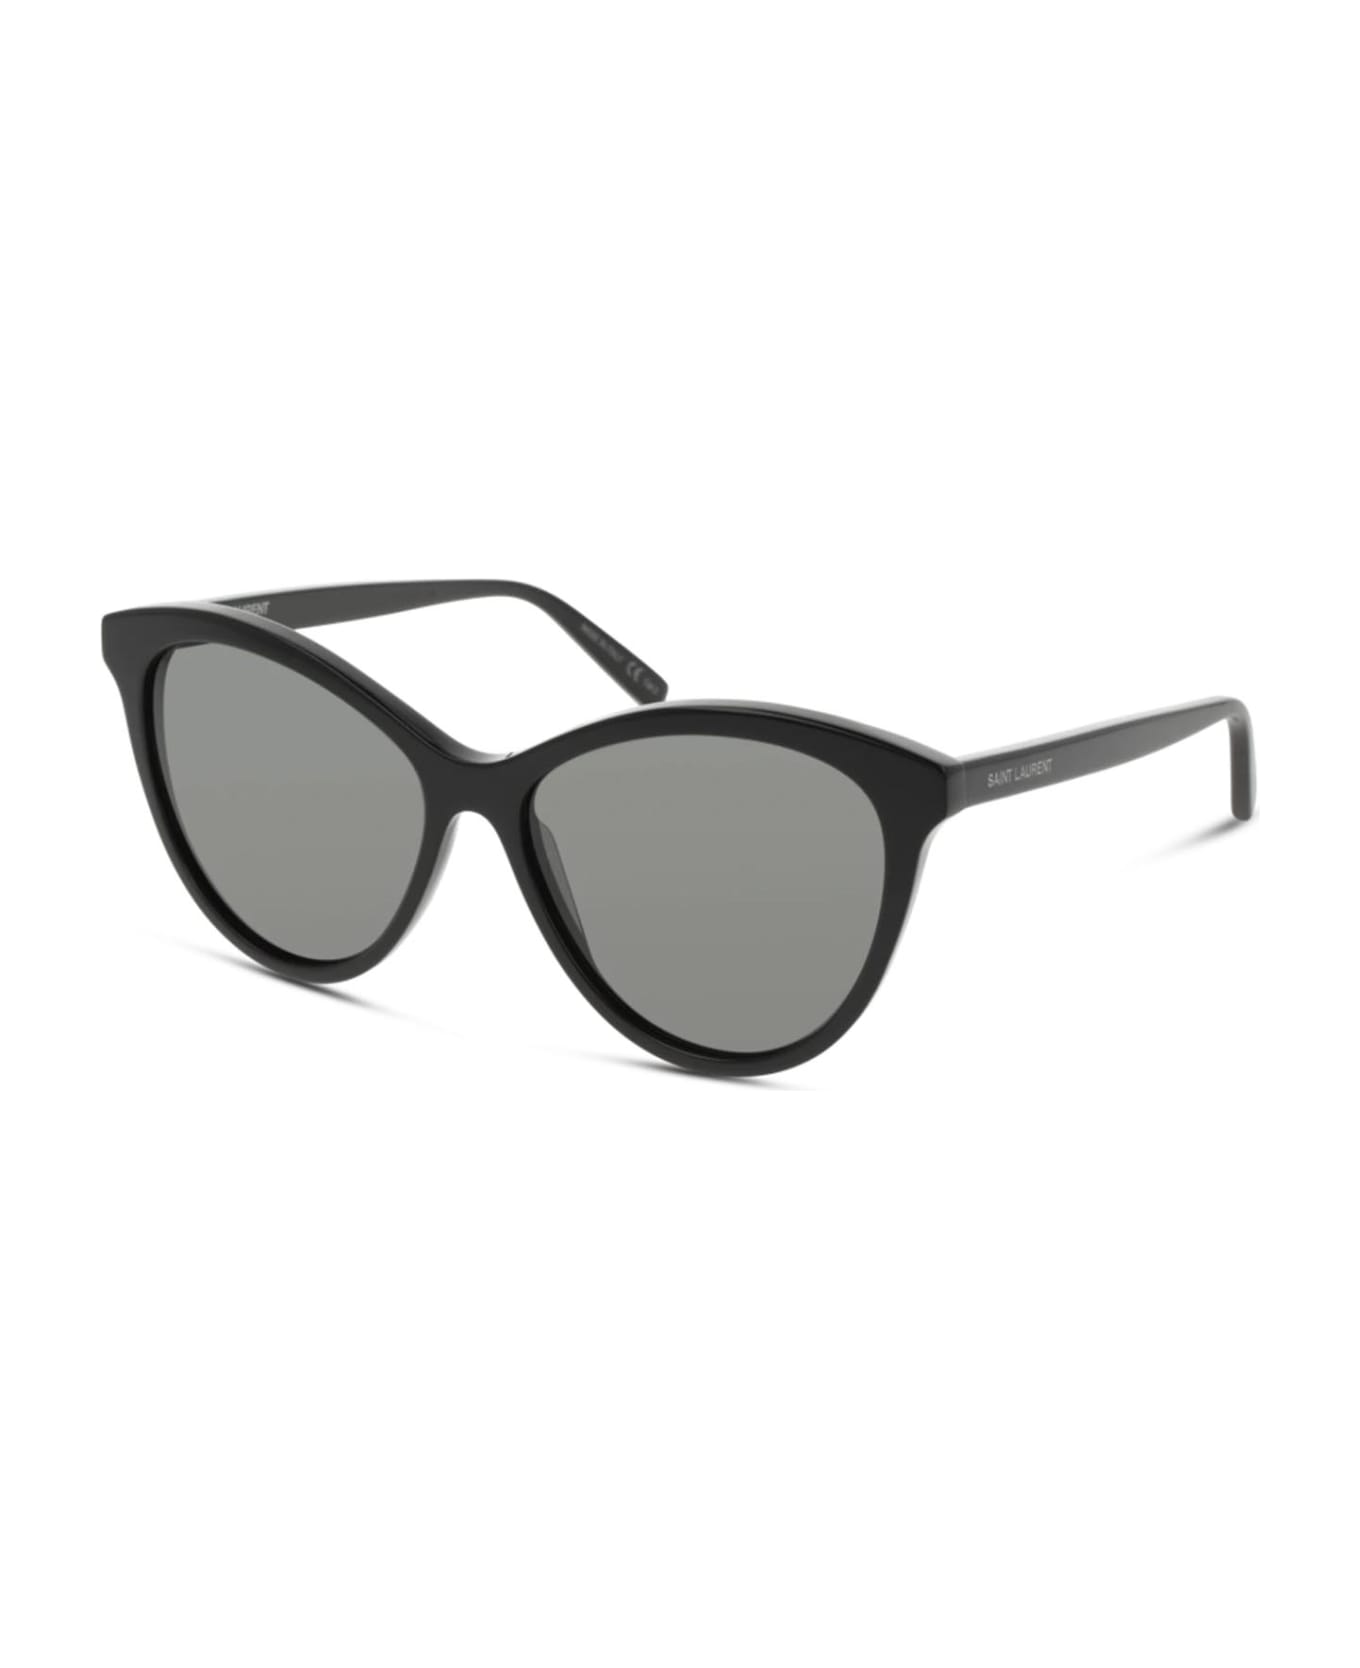 Saint Laurent Eyewear Sl 456 Black Sunglasses - Black